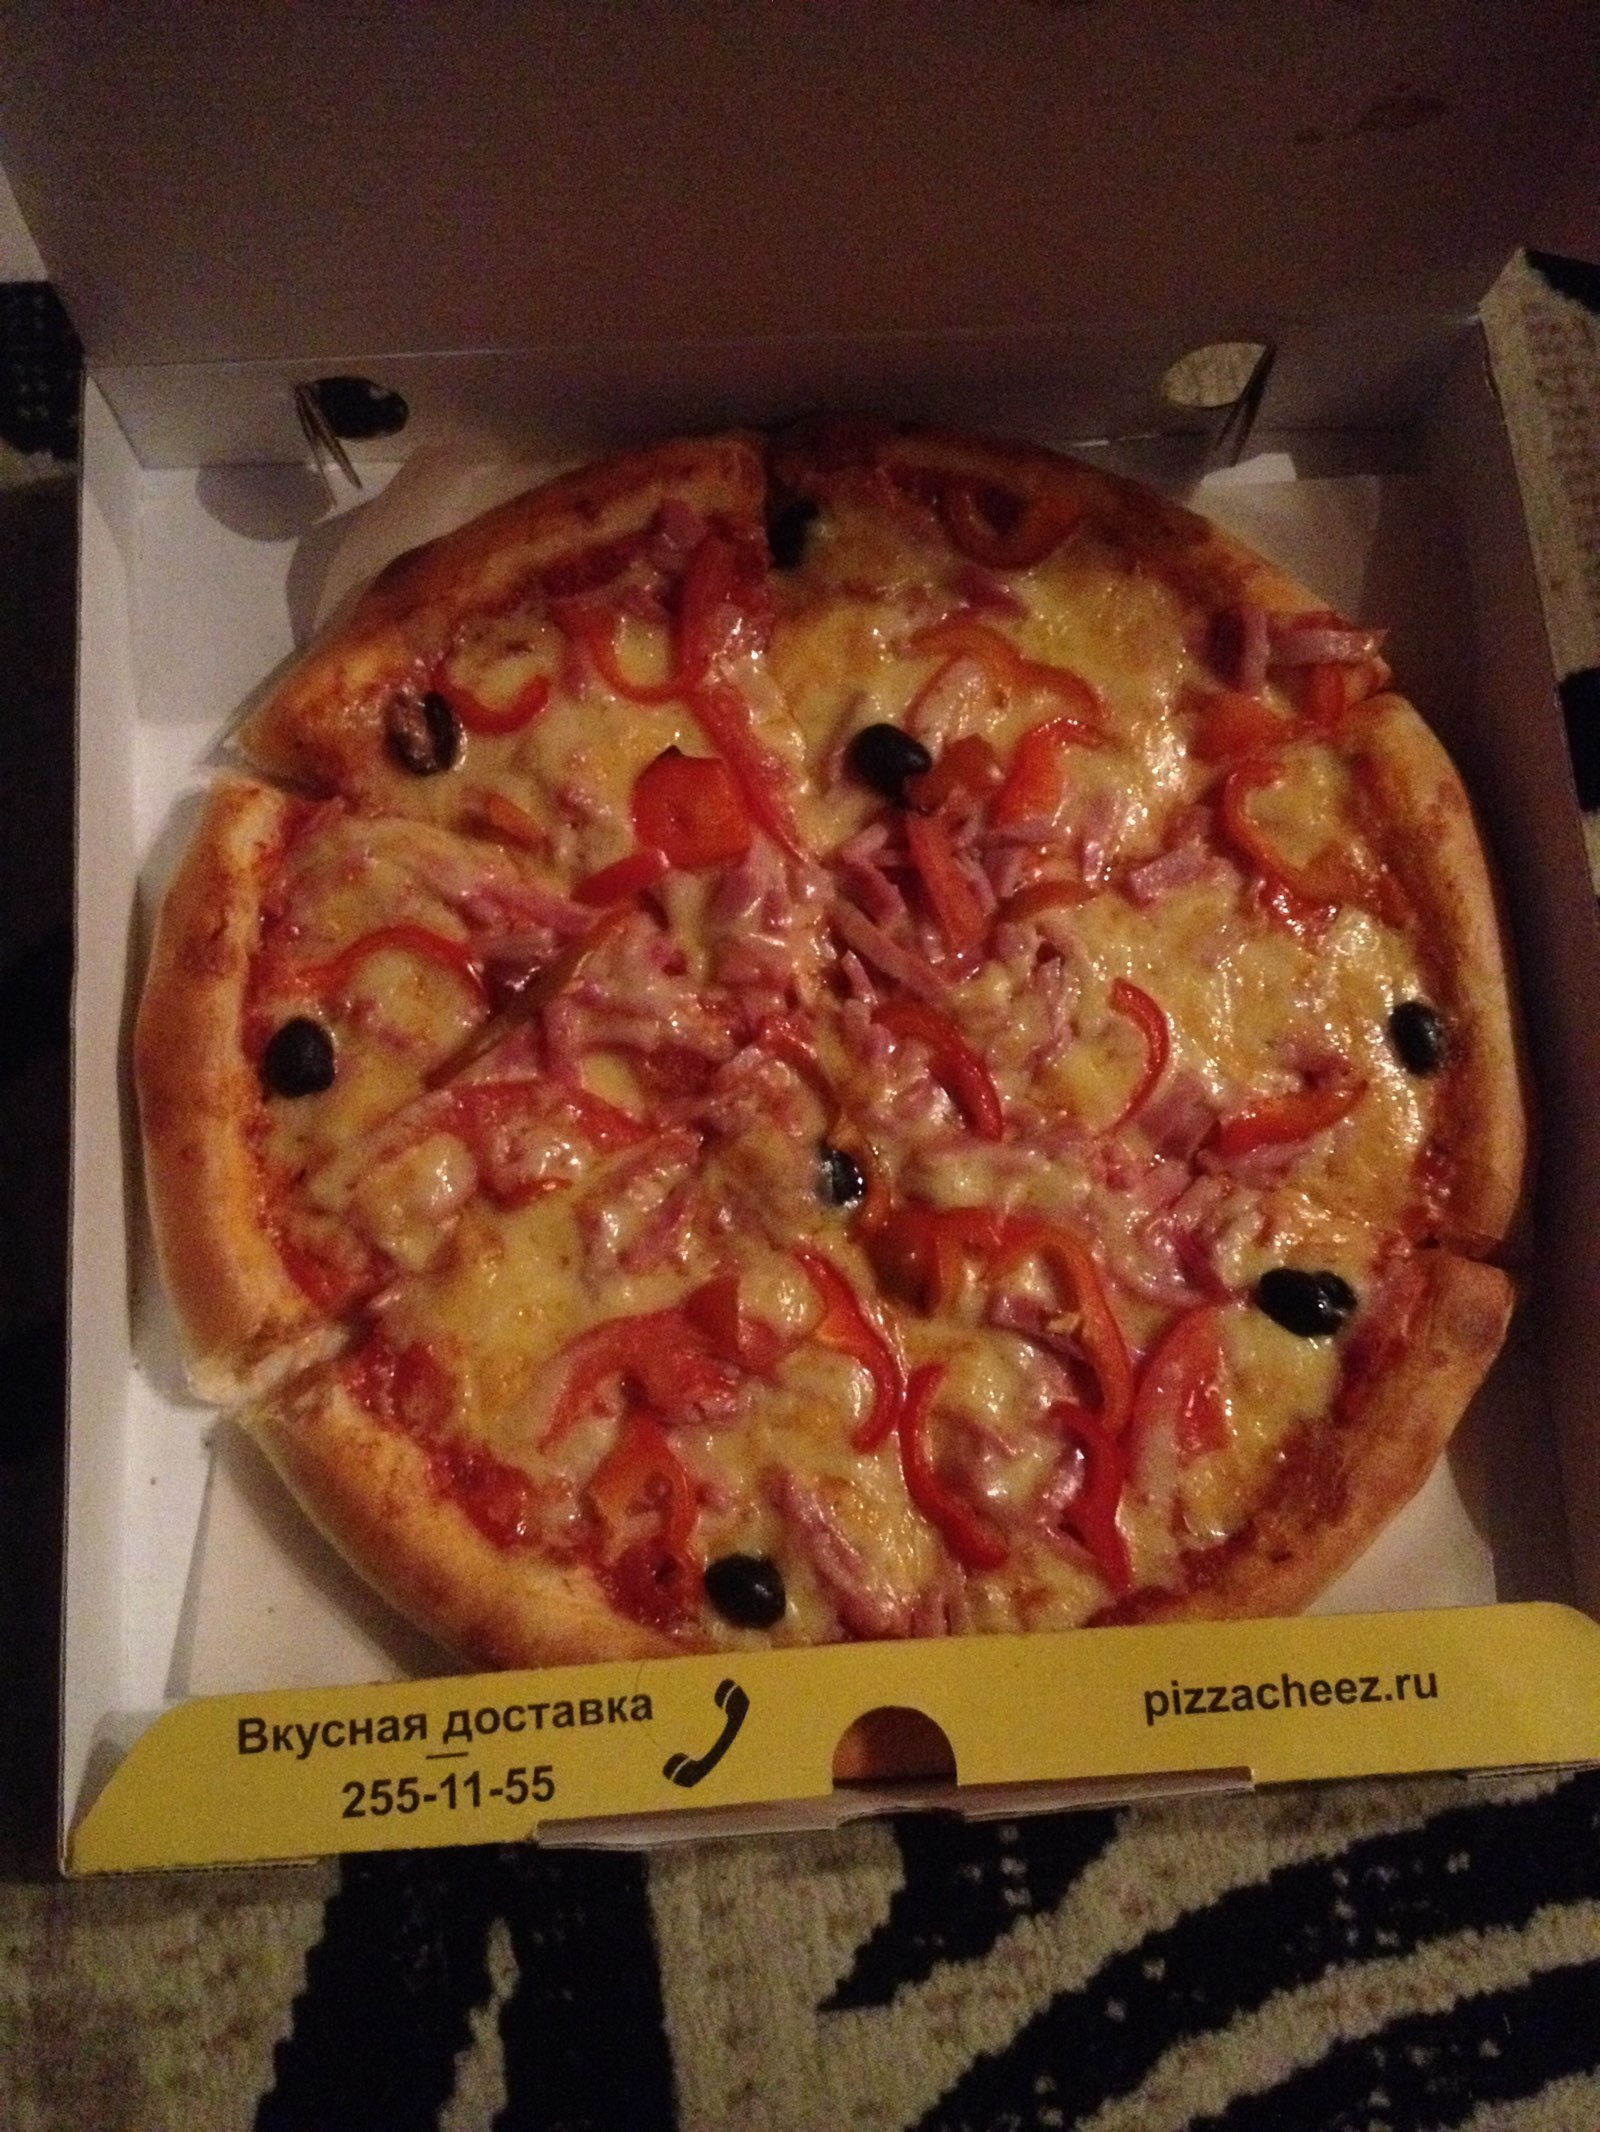 лучшая доставка пиццы в красноярске рейтинг фото 88